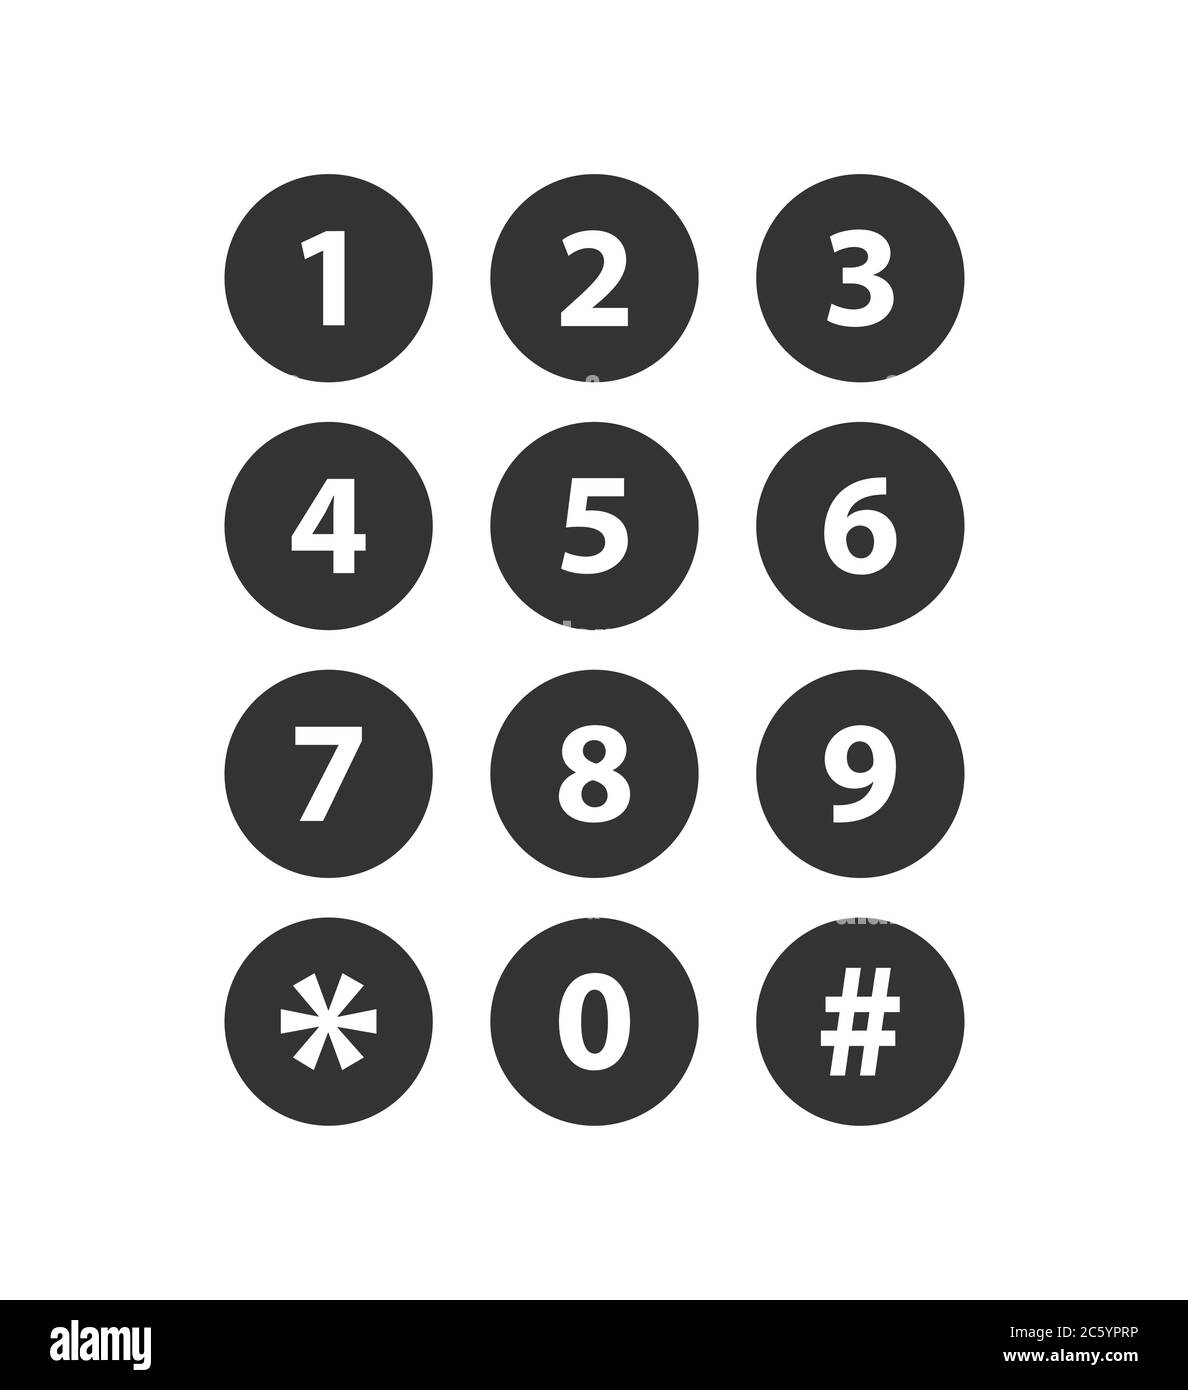 Số điện thoại (Phone numbers): Bạn đang cần tìm số điện thoại của một khách sạn, một nhà hàng, một cửa hàng hay một công ty nào đó? Hãy xem thông tin số điện thoại đầy đủ và chính xác trên hình ảnh của chúng tôi. Bạn sẽ dễ dàng tìm thấy số điện thoại mà mình cần và liên hệ đến địa chỉ cần thiết chỉ trong vài giây.